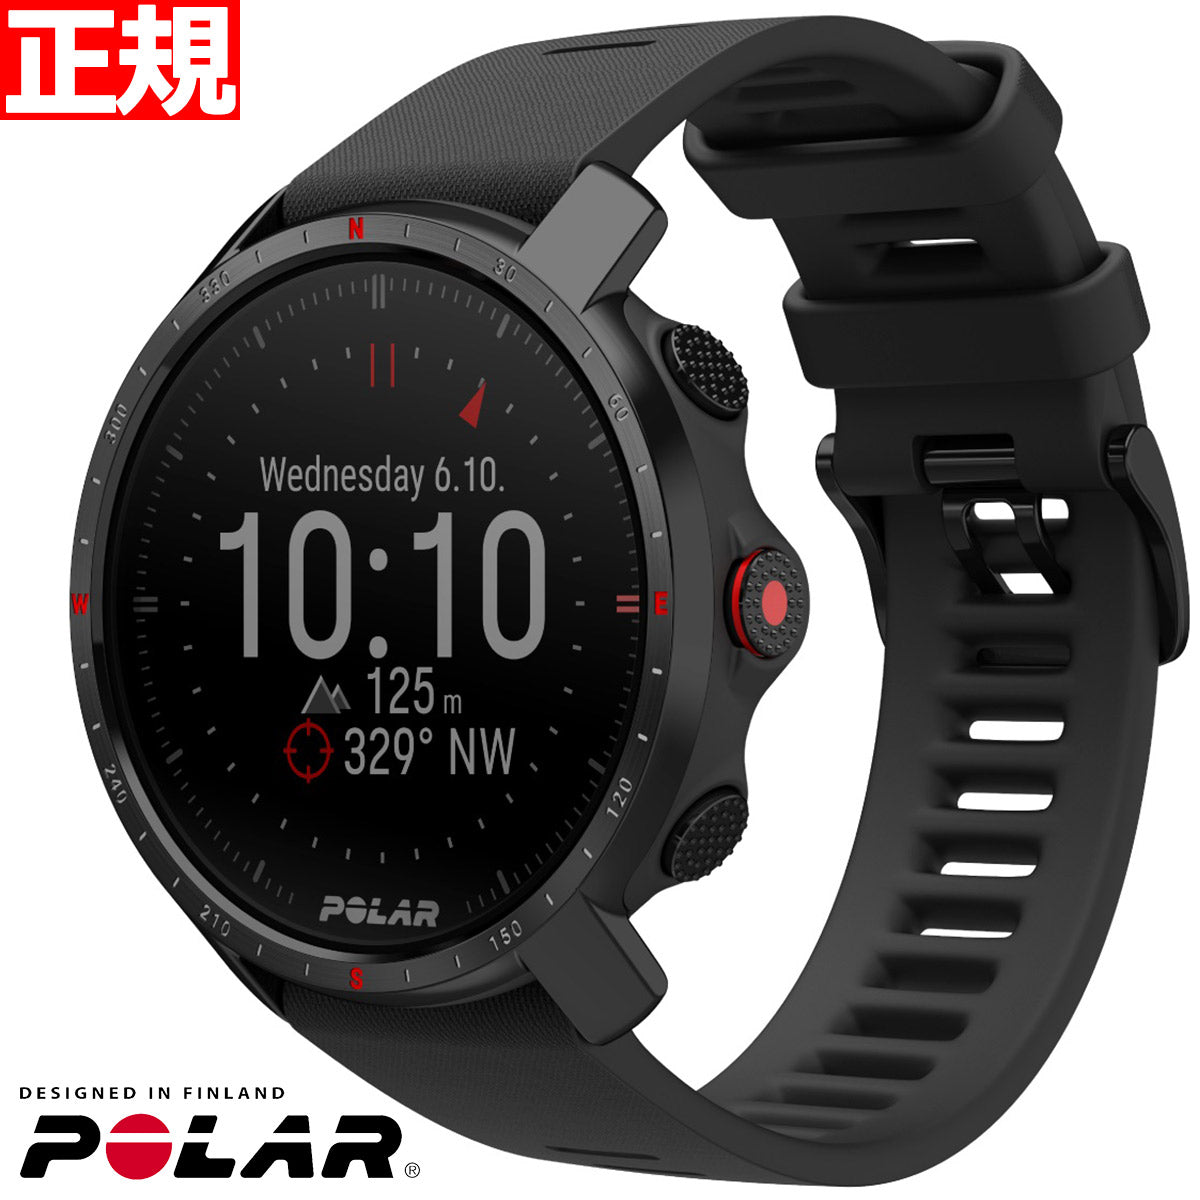 ポラール POLAR グリットXプロ スマートウォッチ GPS 心拍 トレーニング ランニング 登山 アウトドア 腕時計 GRIT X PRO ブラックM/L 90085773 日本正規品